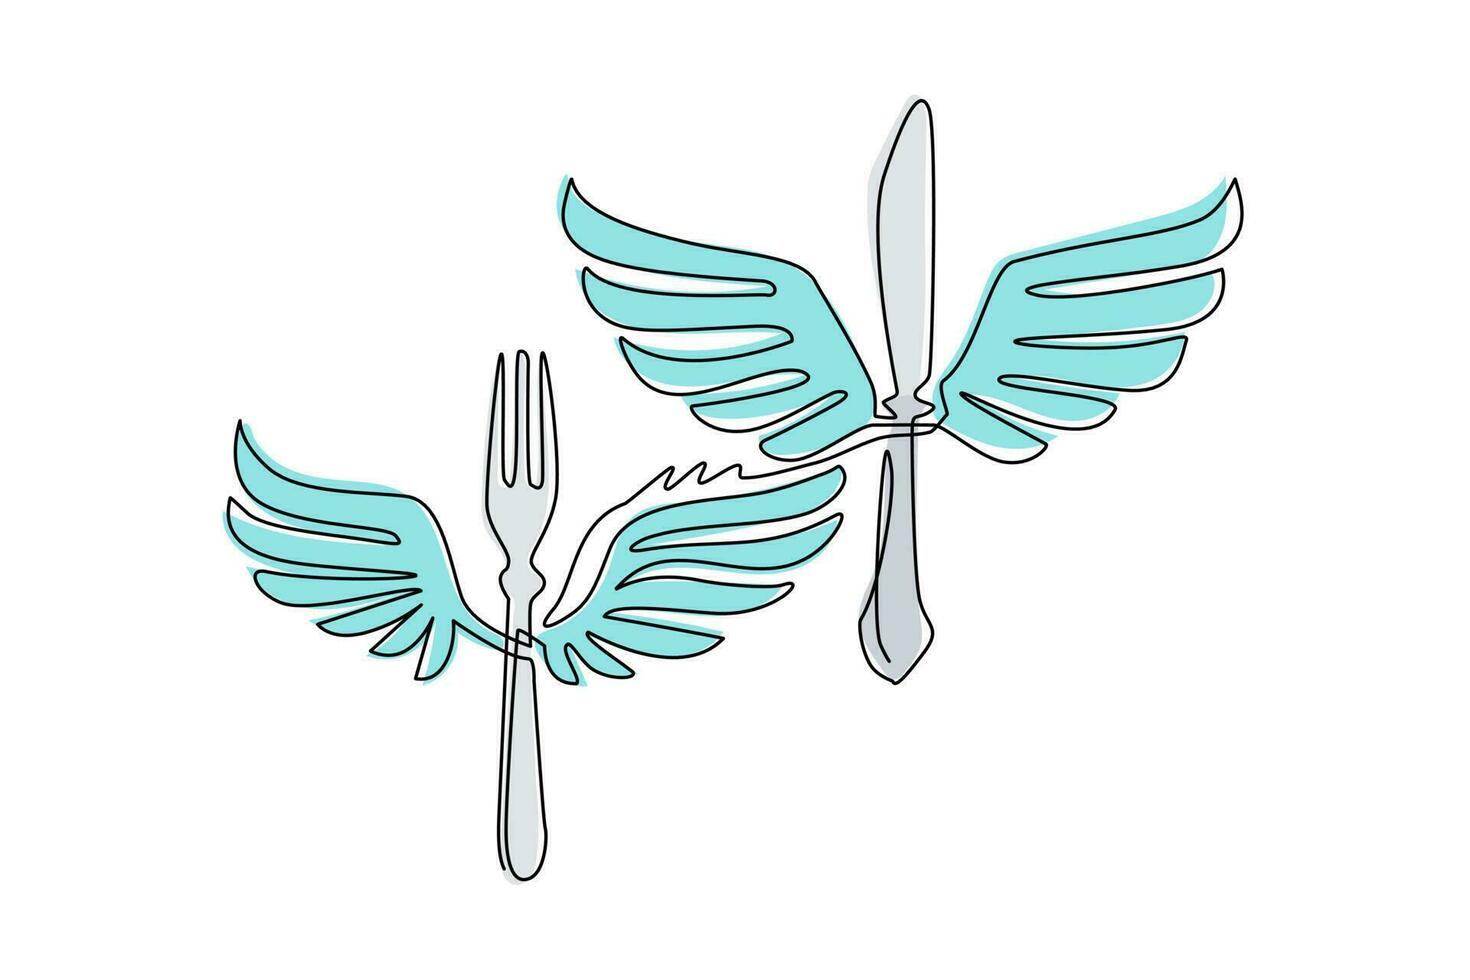 Tenedor y cuchillo de comida de dibujo de línea continua única con alas volar icono de símbolo de logotipo plano. tenedor y cuchillo de silueta alada. tema del negocio de la comida. Ilustración de vector de diseño gráfico de dibujo de una línea dinámica